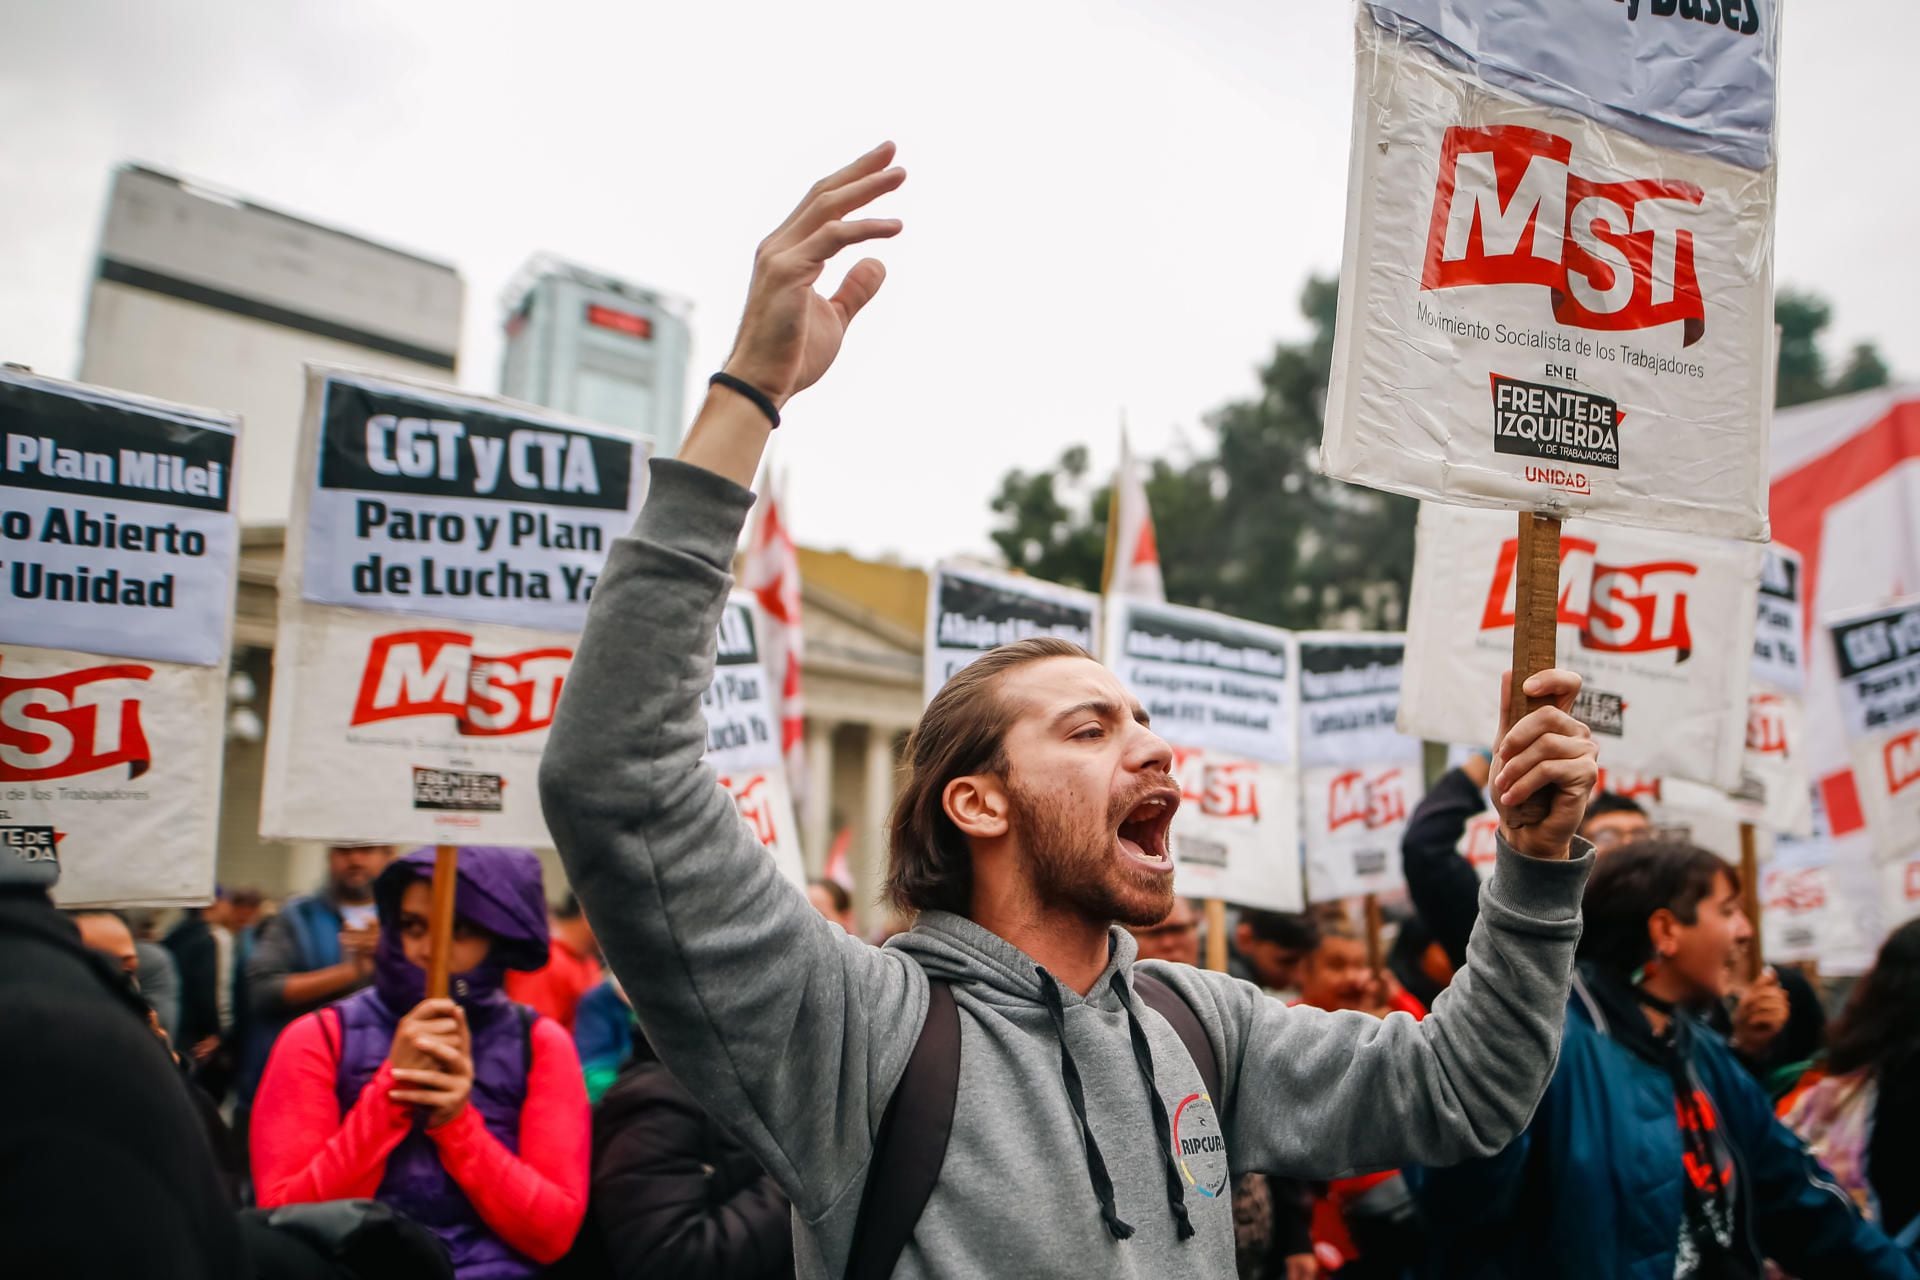 Un integrante del Movimiento Socialista de los Trabajadores (MST) grita consignas en una marcha con motivo del Día Internacional de los Trabajadores este miércoles, en Buenos Aires (Argentina).  EFE/ Juan Ignacio Roncoroni